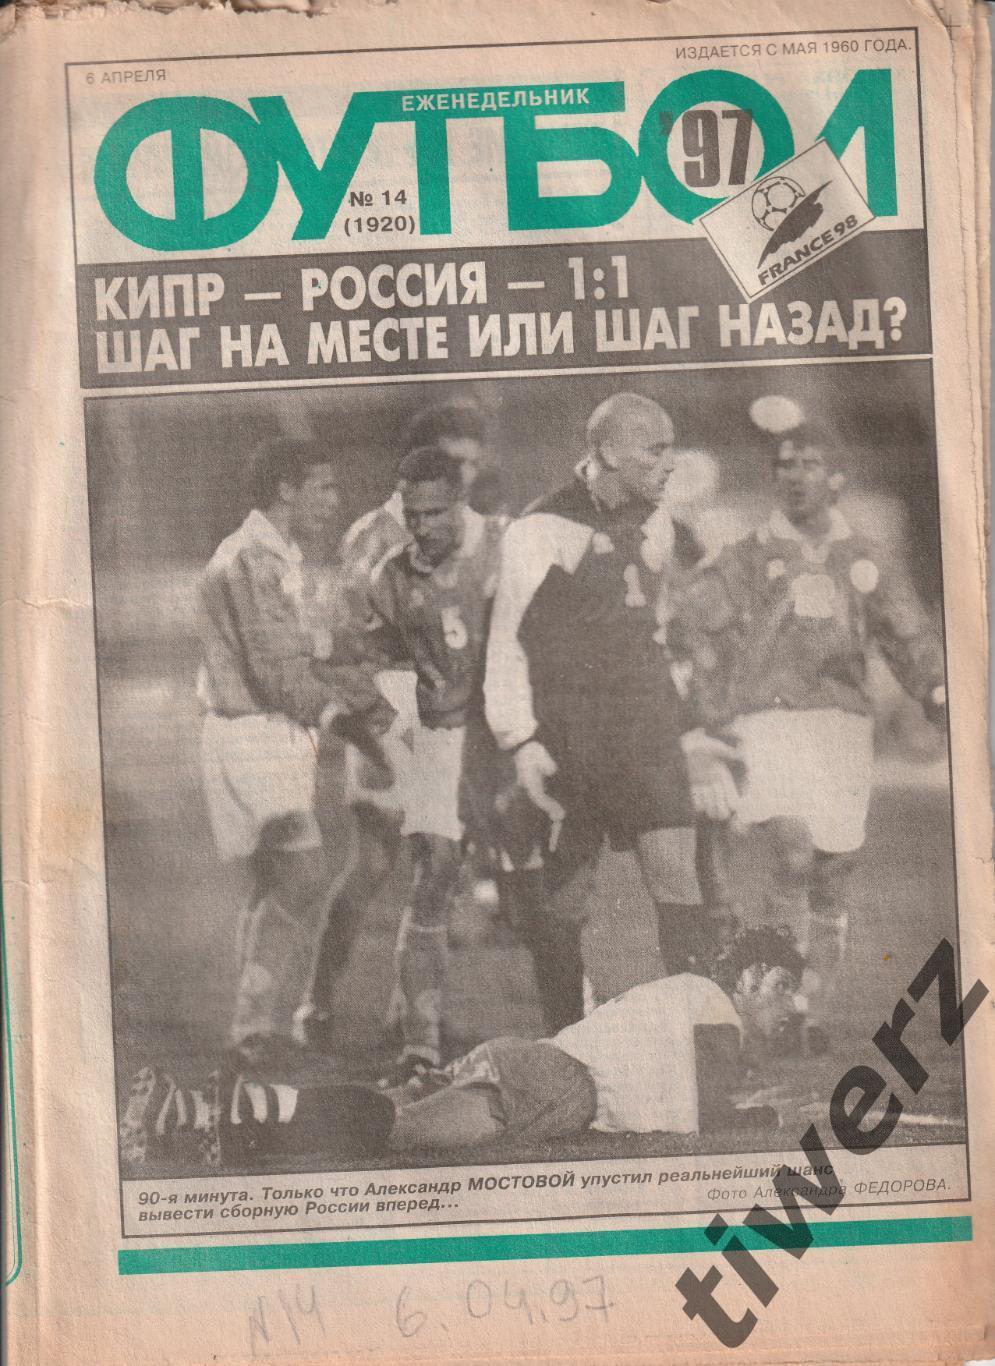 Еженедельник Футбол. 1996 №32, 1997 №13 - 16 1